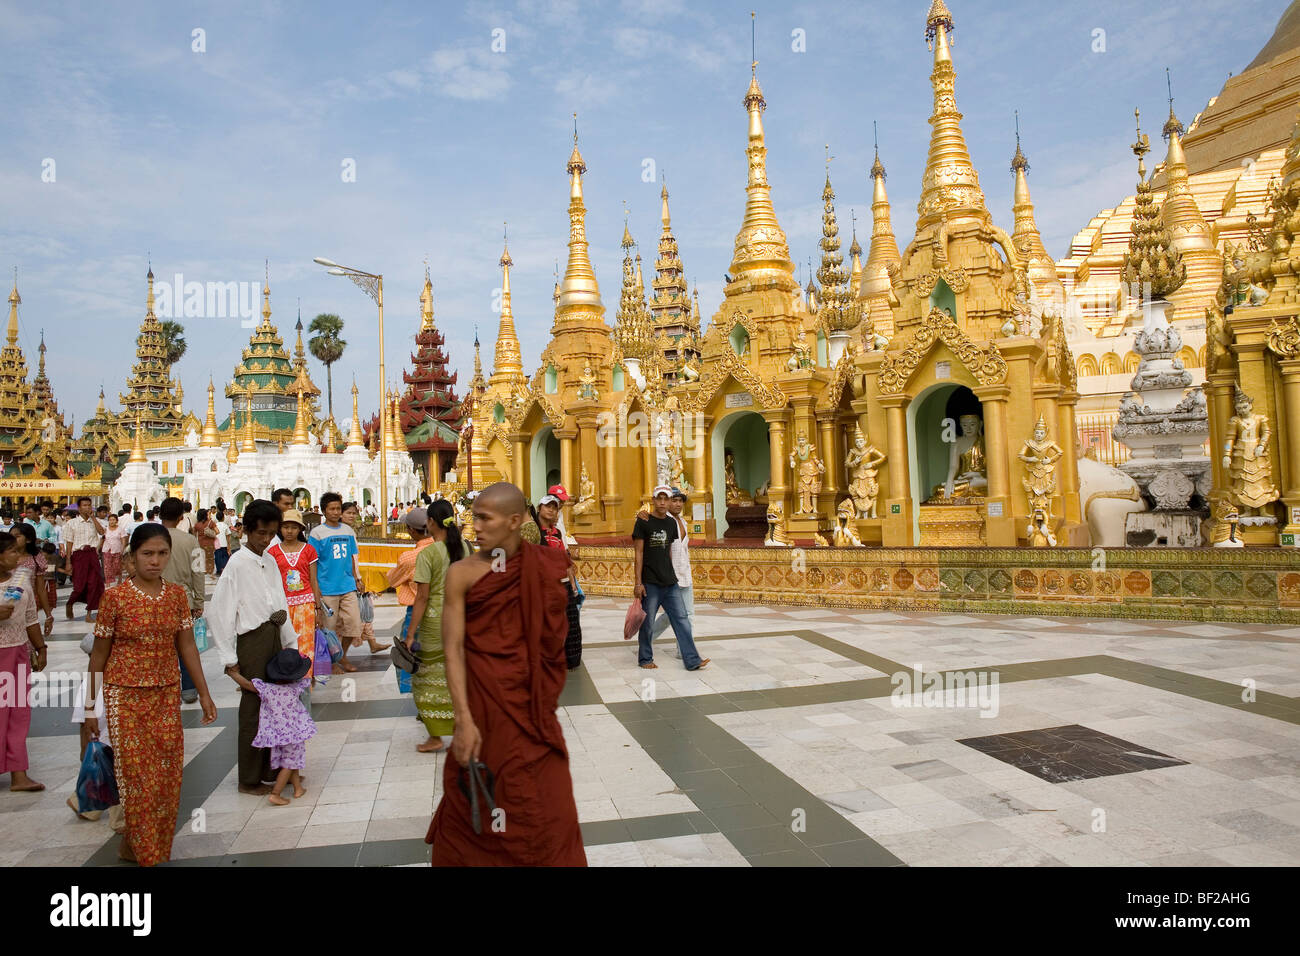 Buddhistischen Mönch und Touristen vor goldenen Stupas auf dem Gelände der Shwedagon-Pagode in Yangon, Rangun, Myanmar, Birma Stockfoto